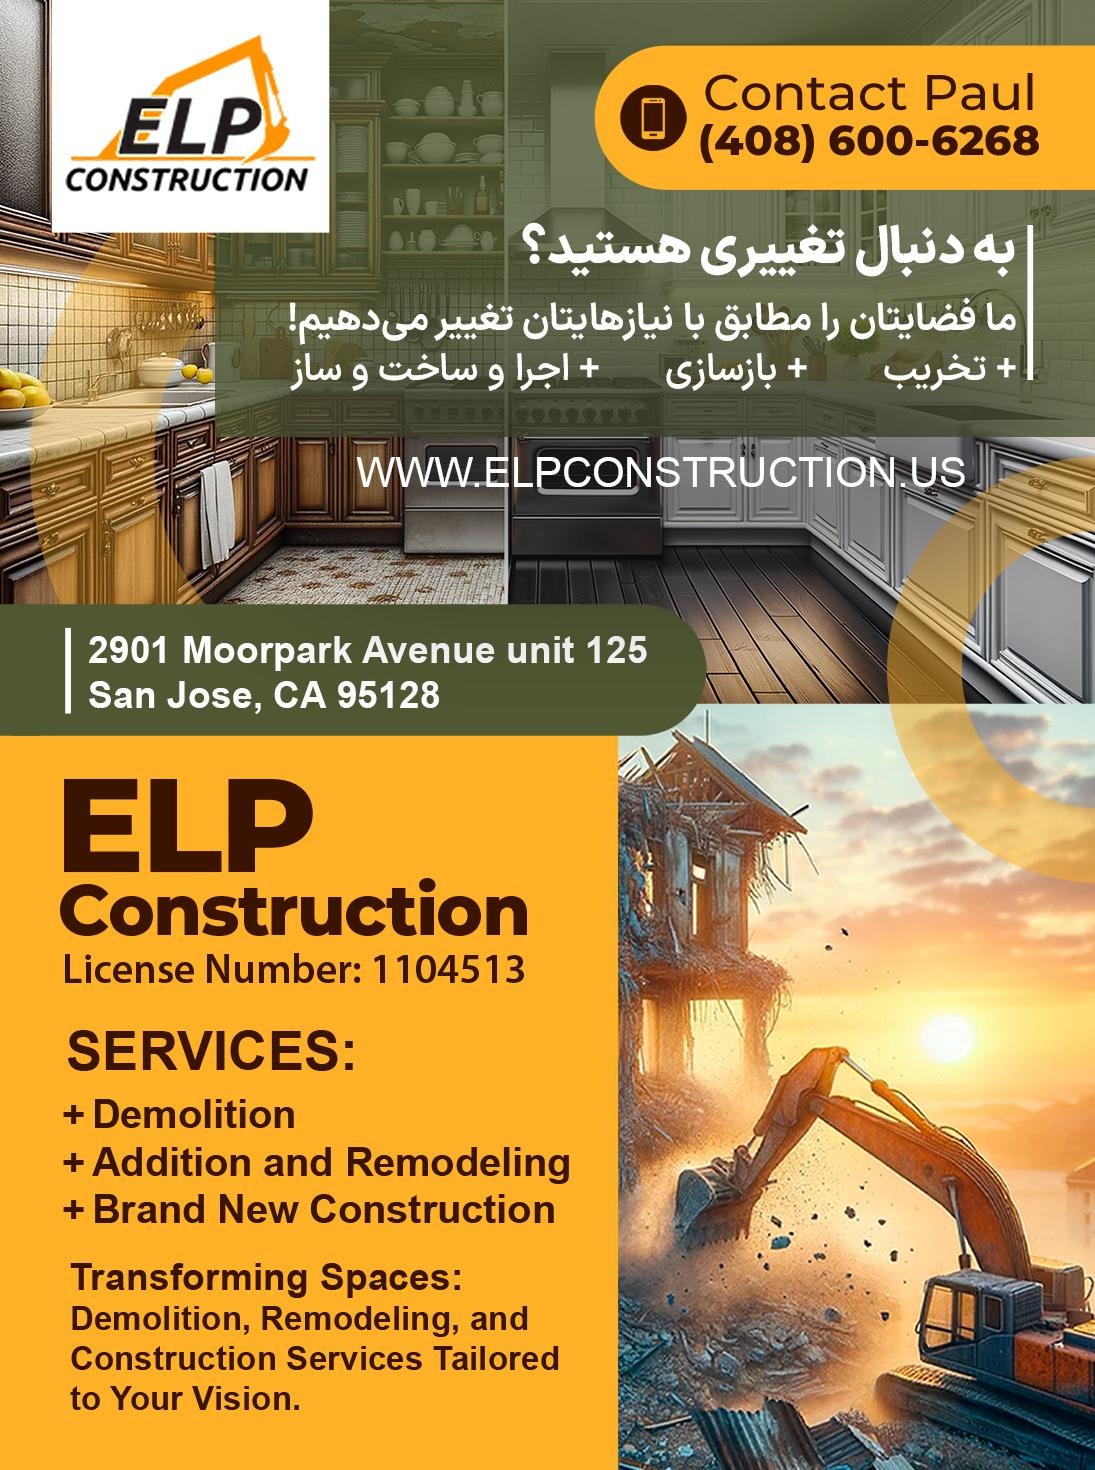 ELP Construction